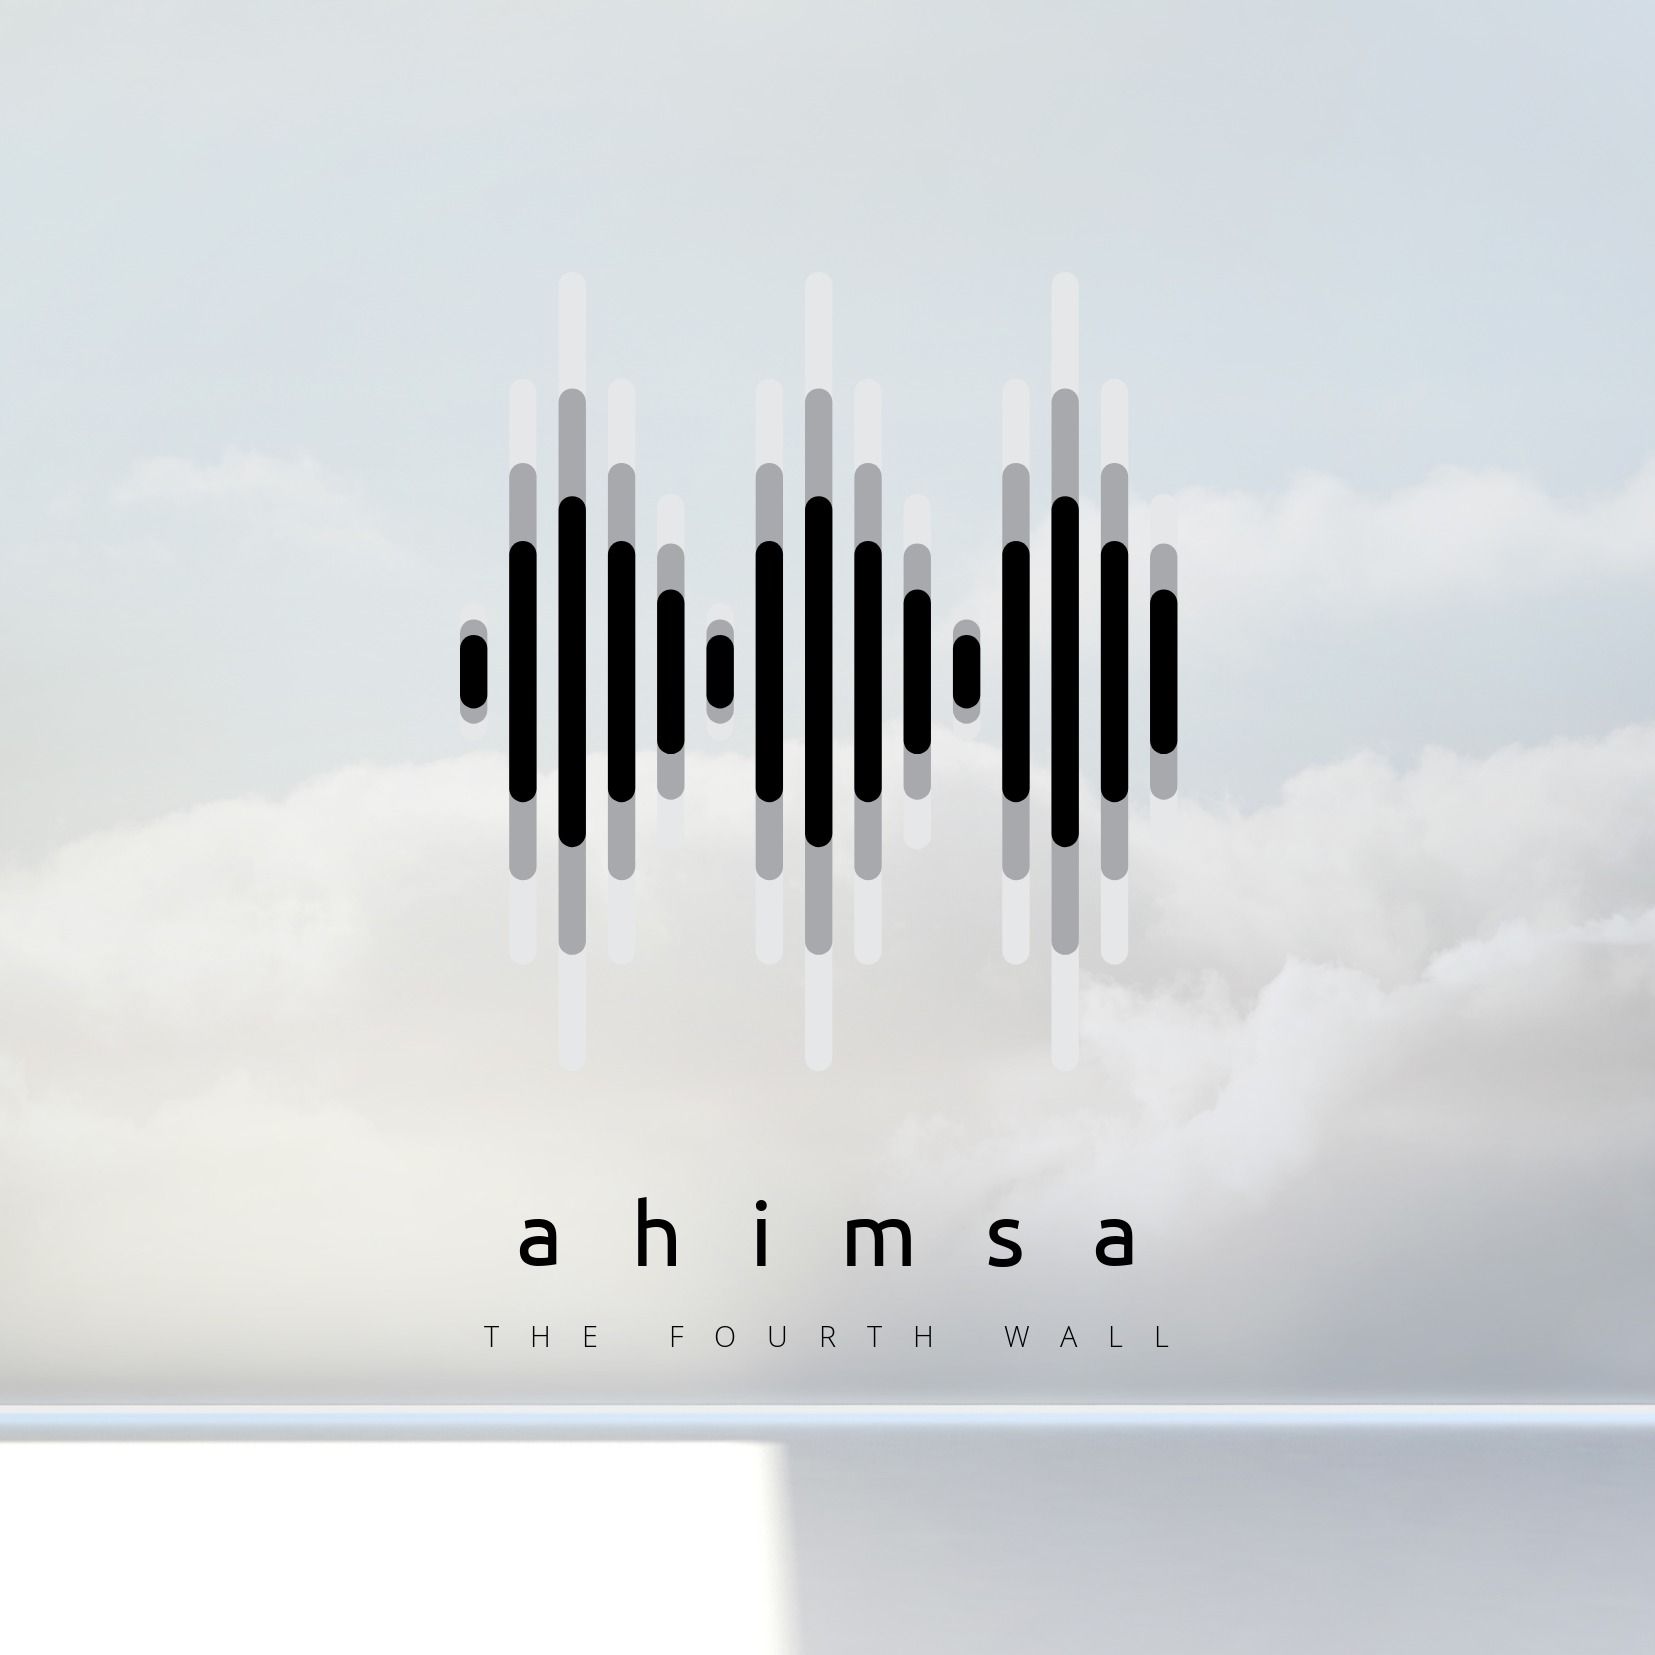 Soundbars vor einem Himmelshintergrund – Verwendung des offenen Himmels bei der Gestaltung des Albumcovers – Bild